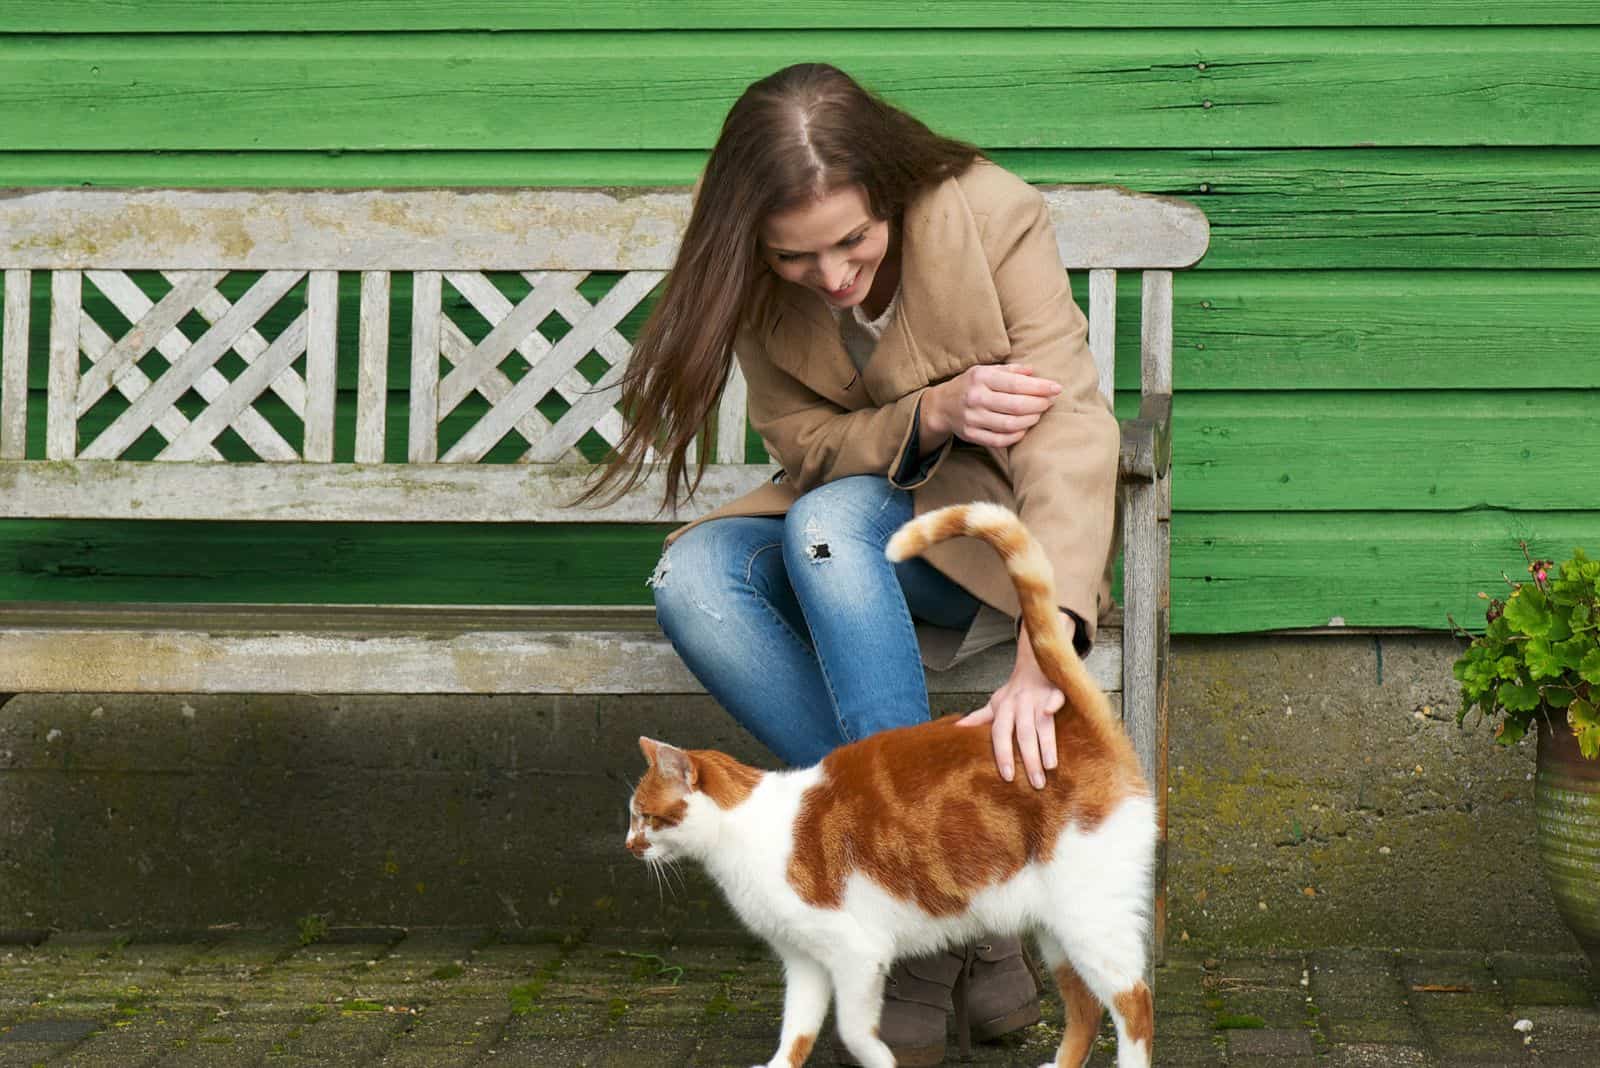 Een kat loopt voor een vrouw die op een bankje zit